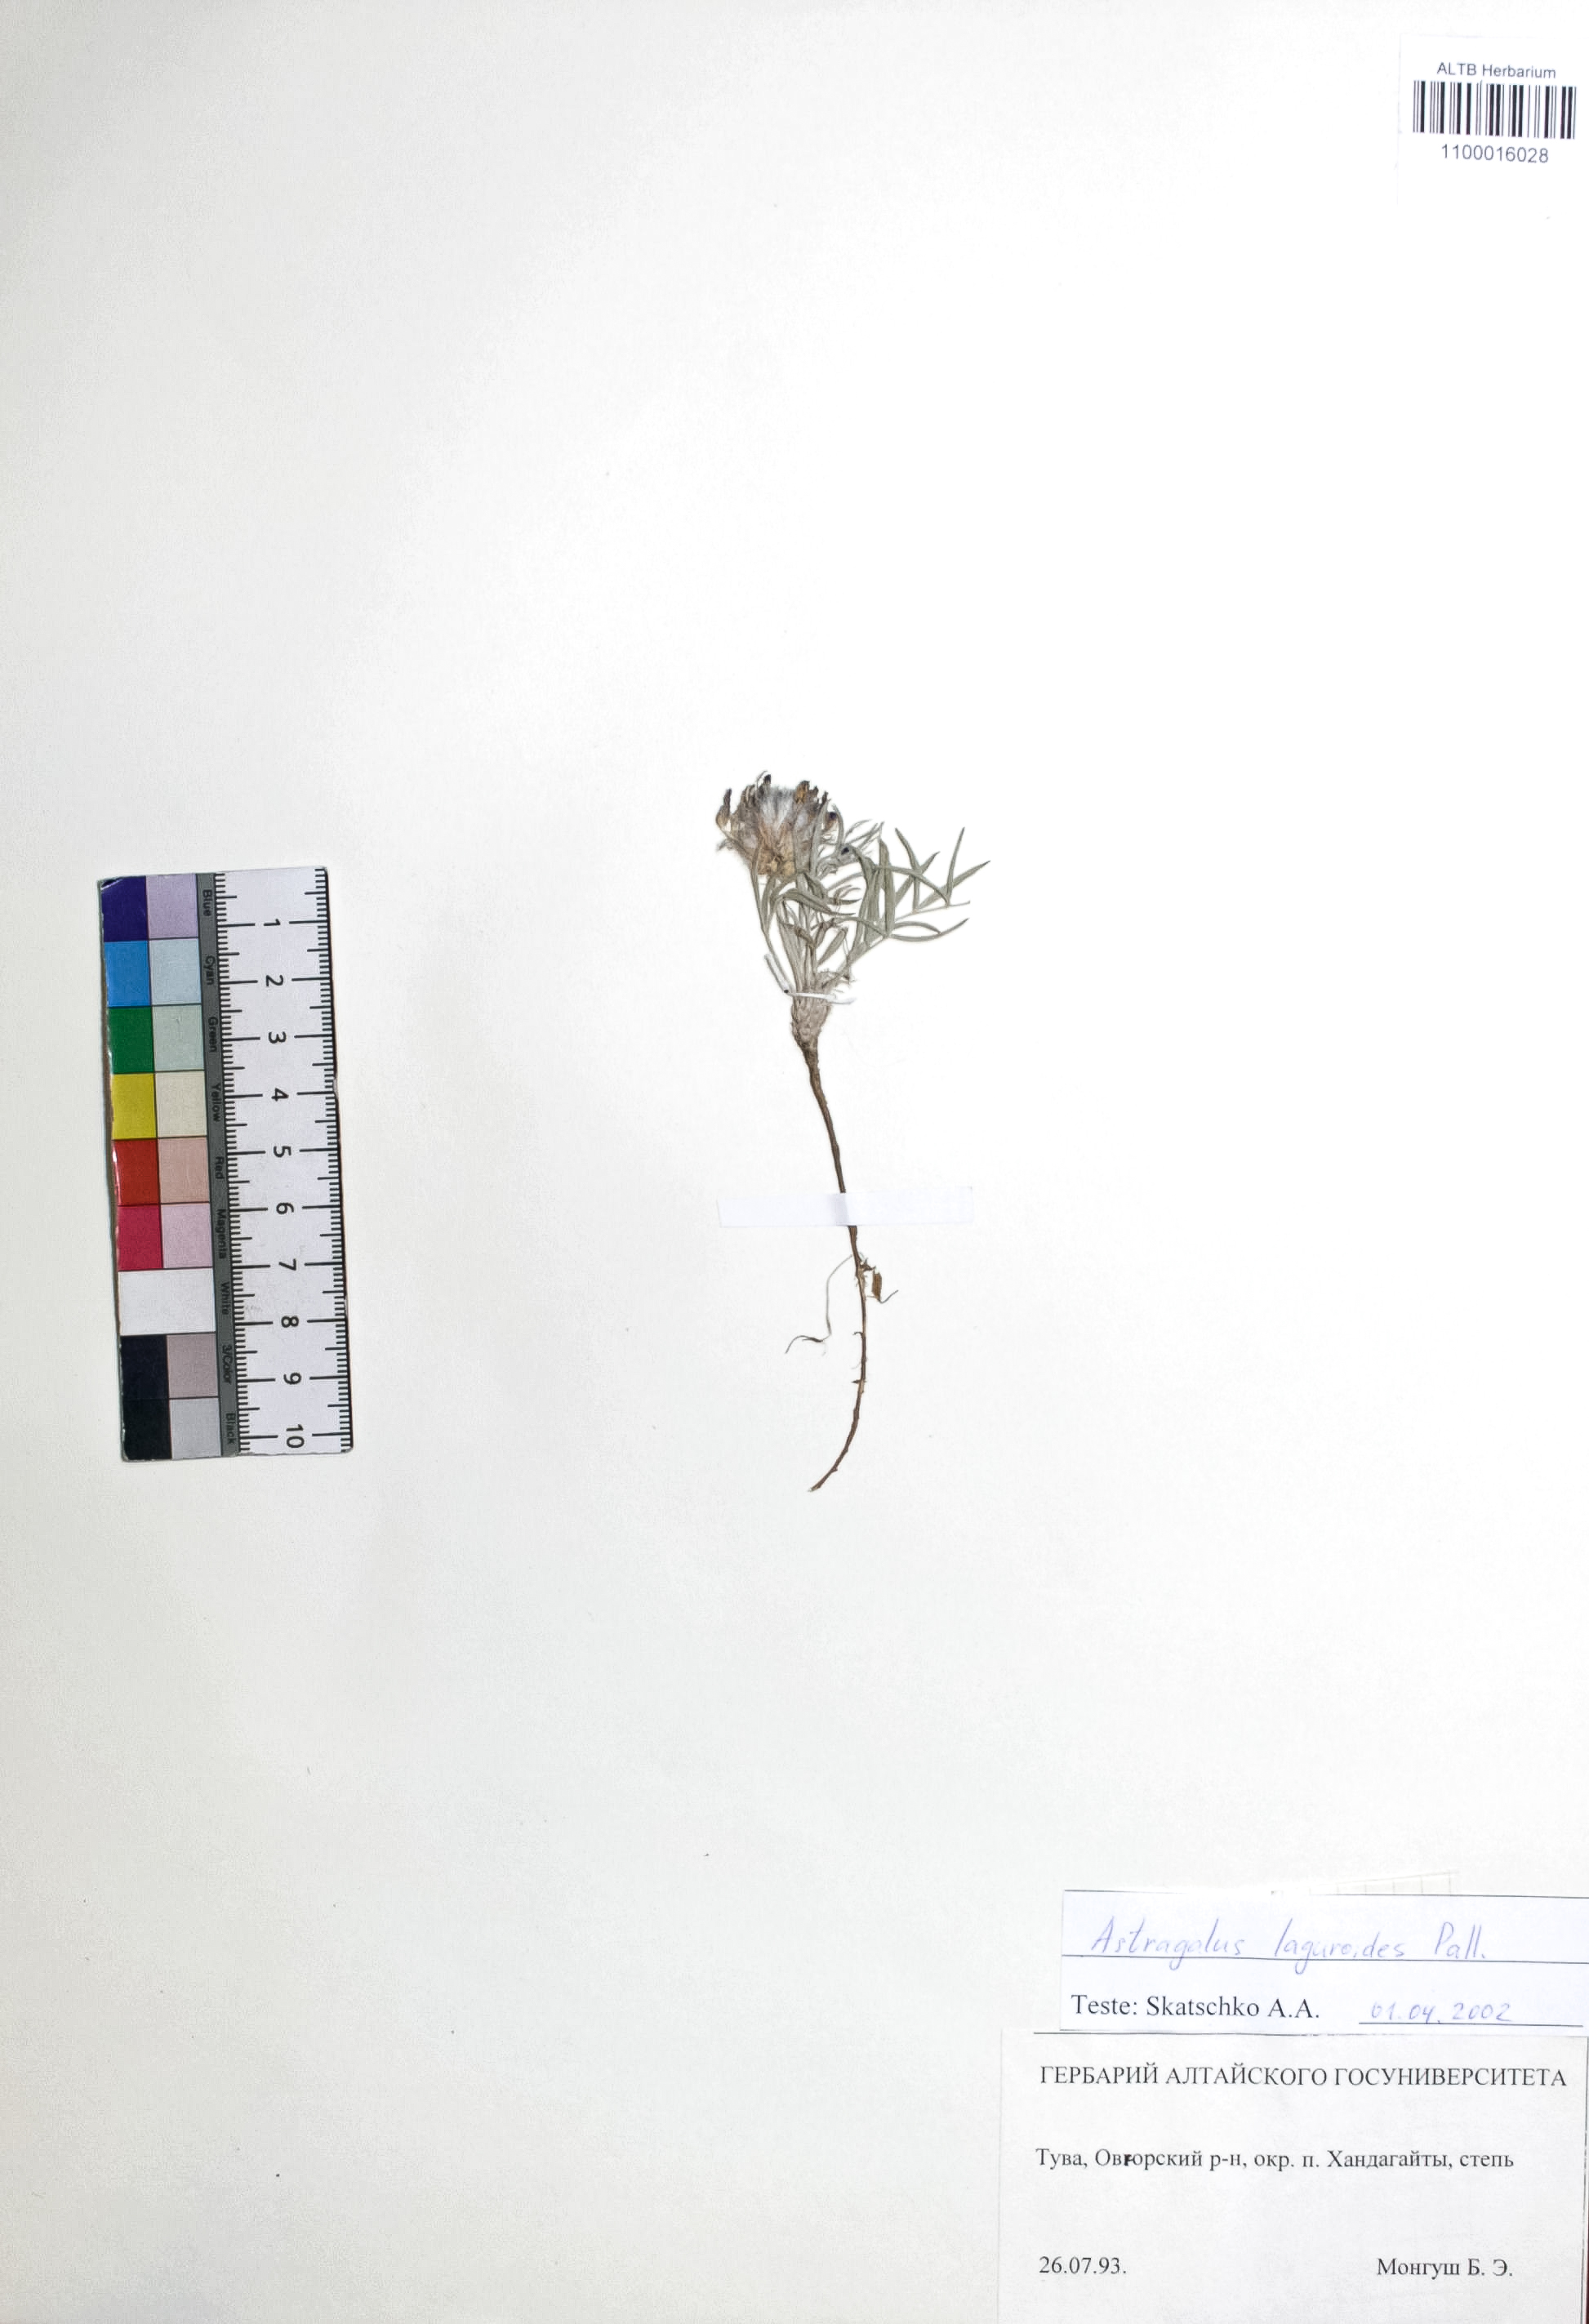 Astragalus laguroides Pall.